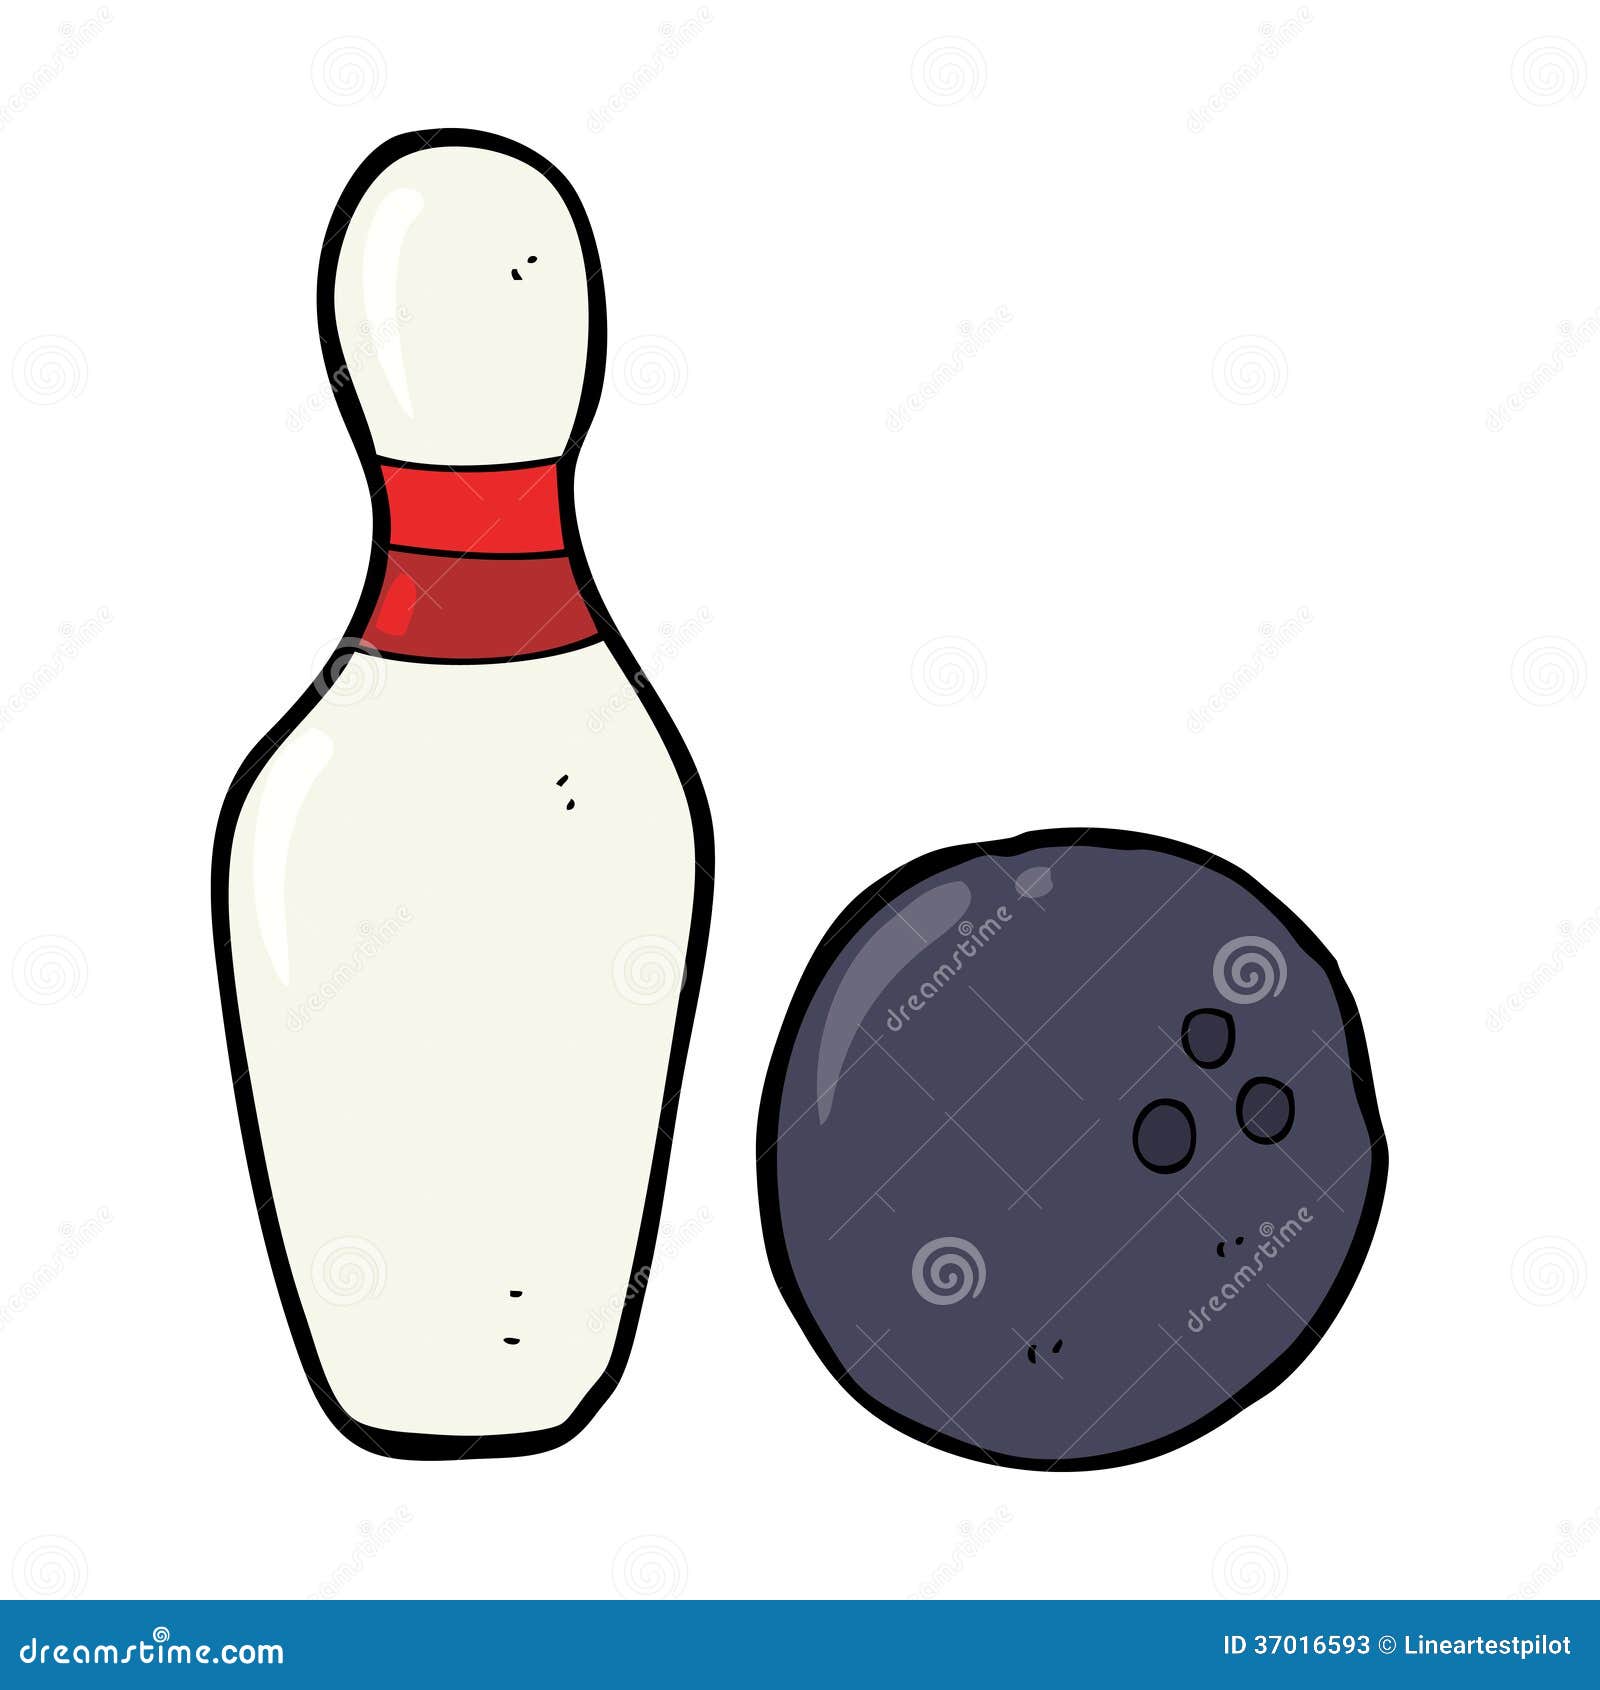 Ten Pin Bowling Cartoon Stock Photos - Image: 37016593